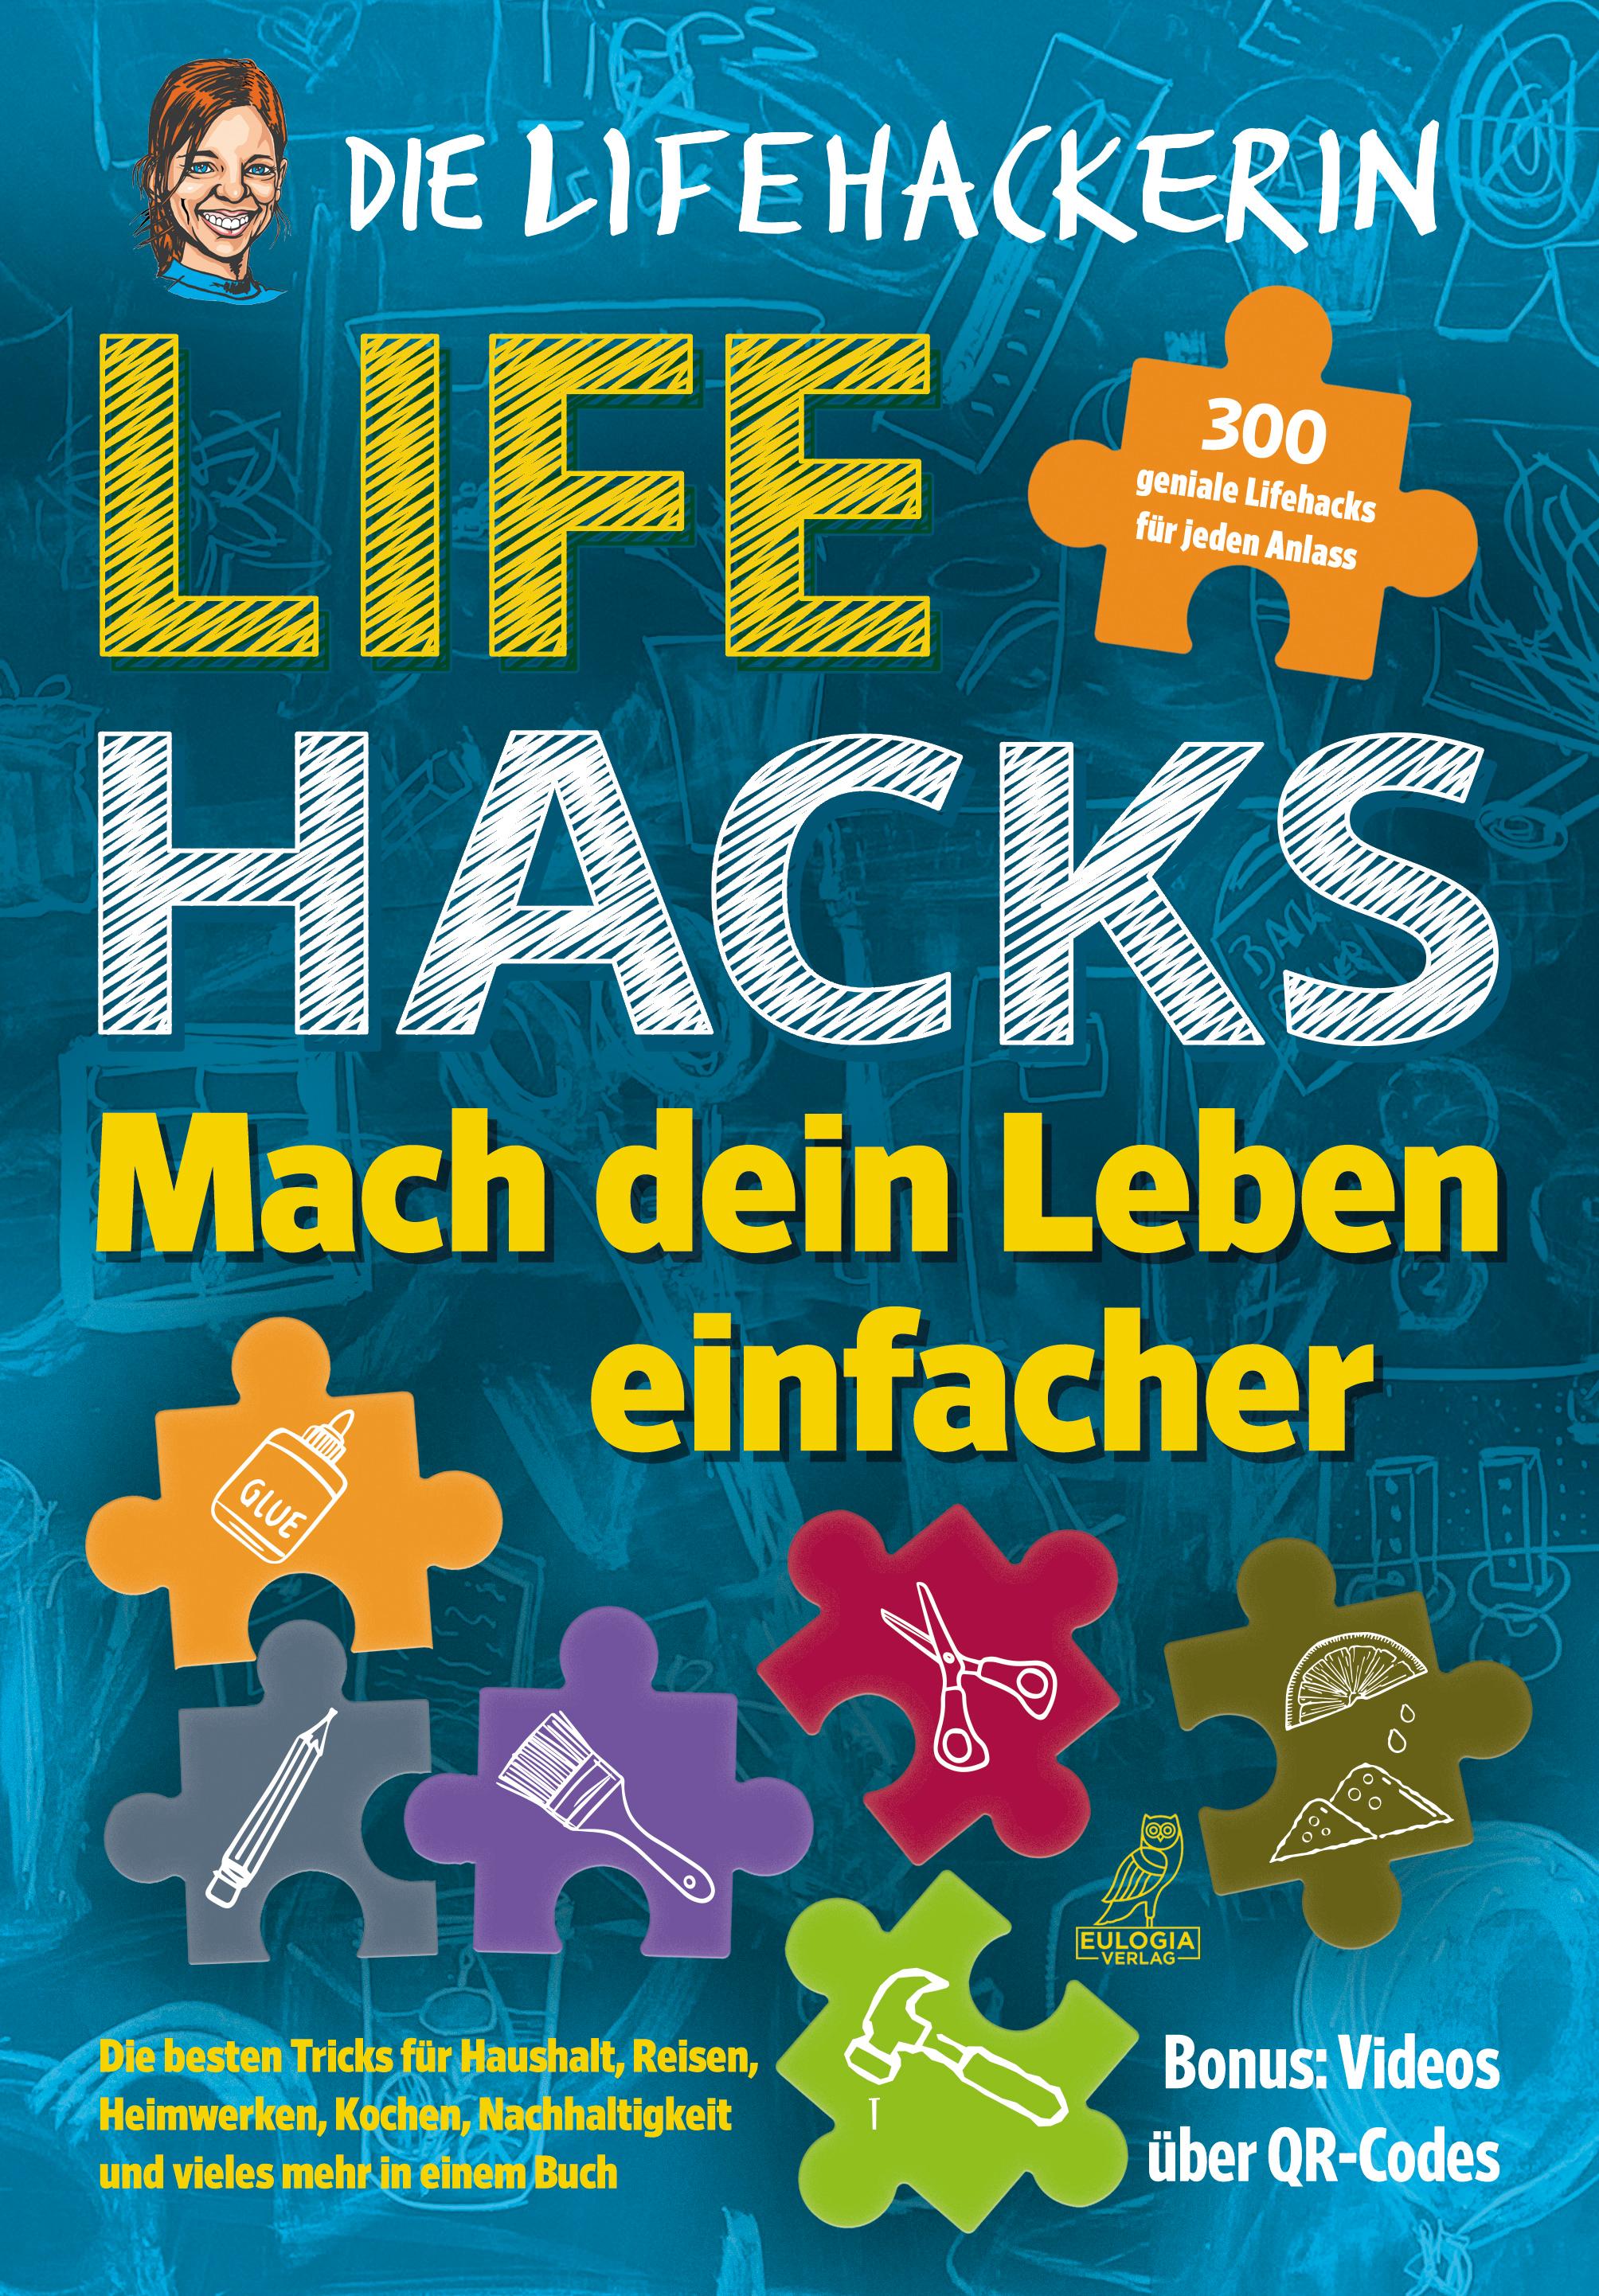 Lifehacks - Mach dein Leben einfacher 300 geniale Lifehacks für jeden Anlass - Die besten Tricks für Haushalt, Reisen, Heimwerken, Kochen, Nachhaltigkeit und vieles mehr in einem Buch